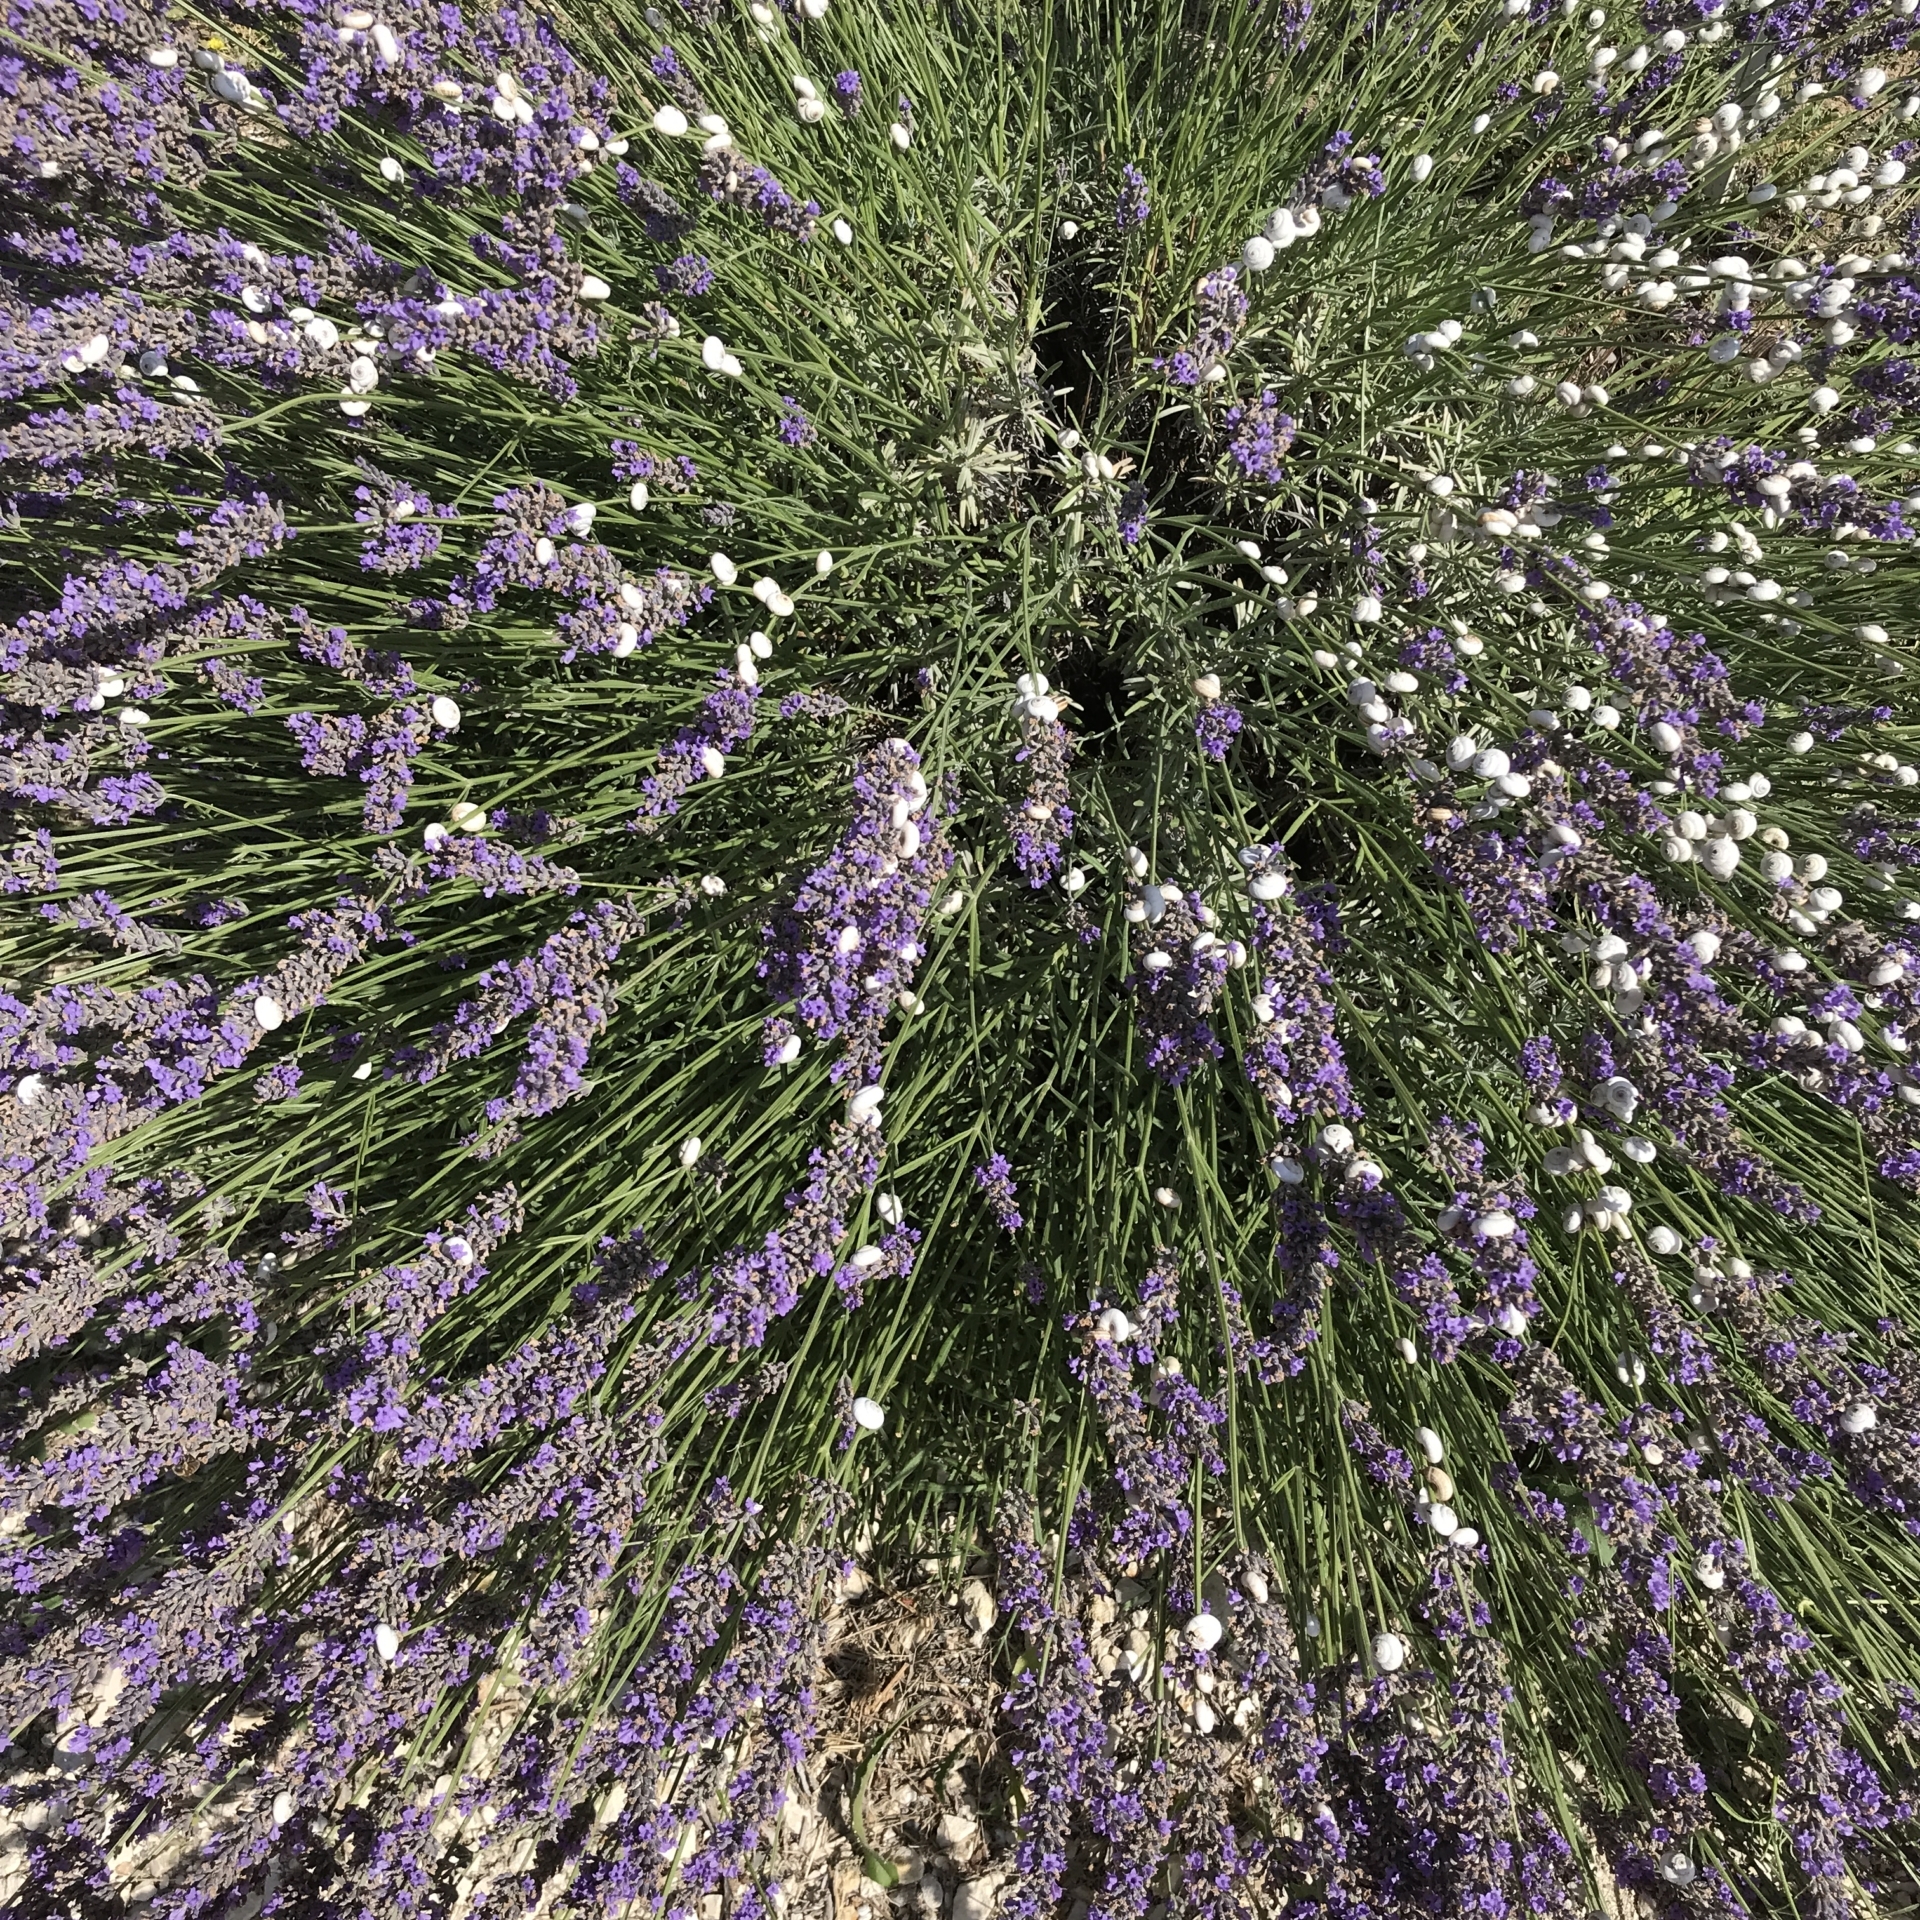 Snails just love lavender!